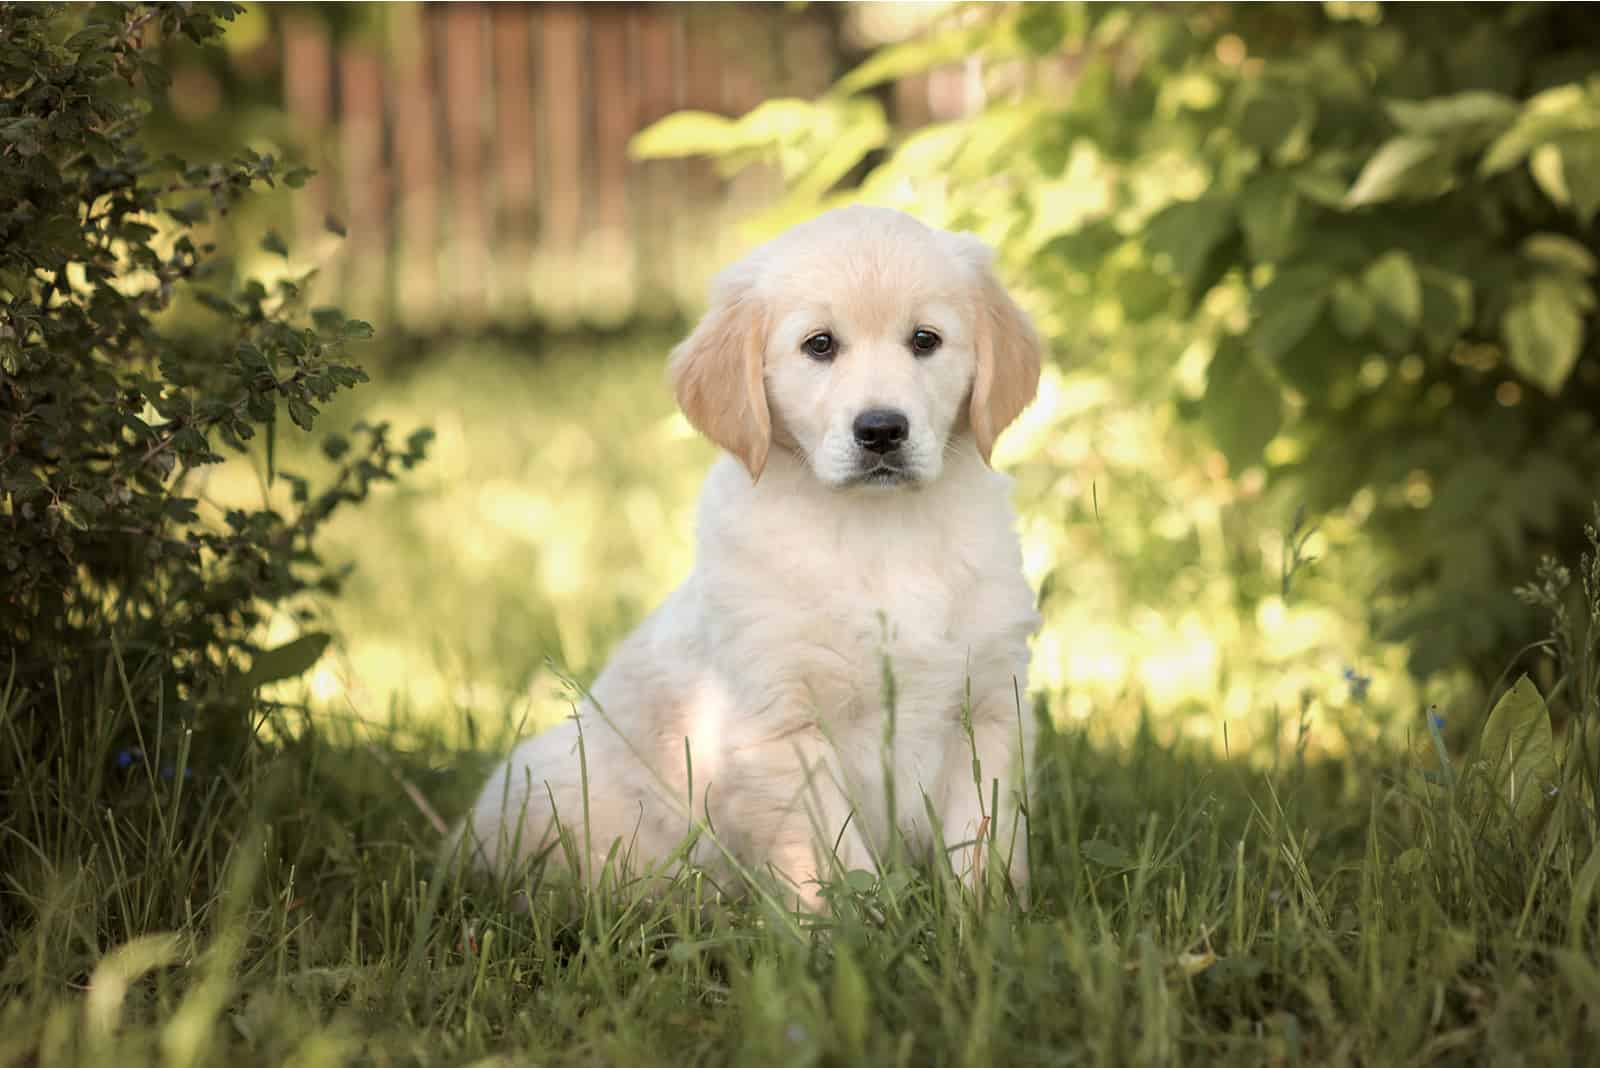 Golden Retriever puppy sitting on grass